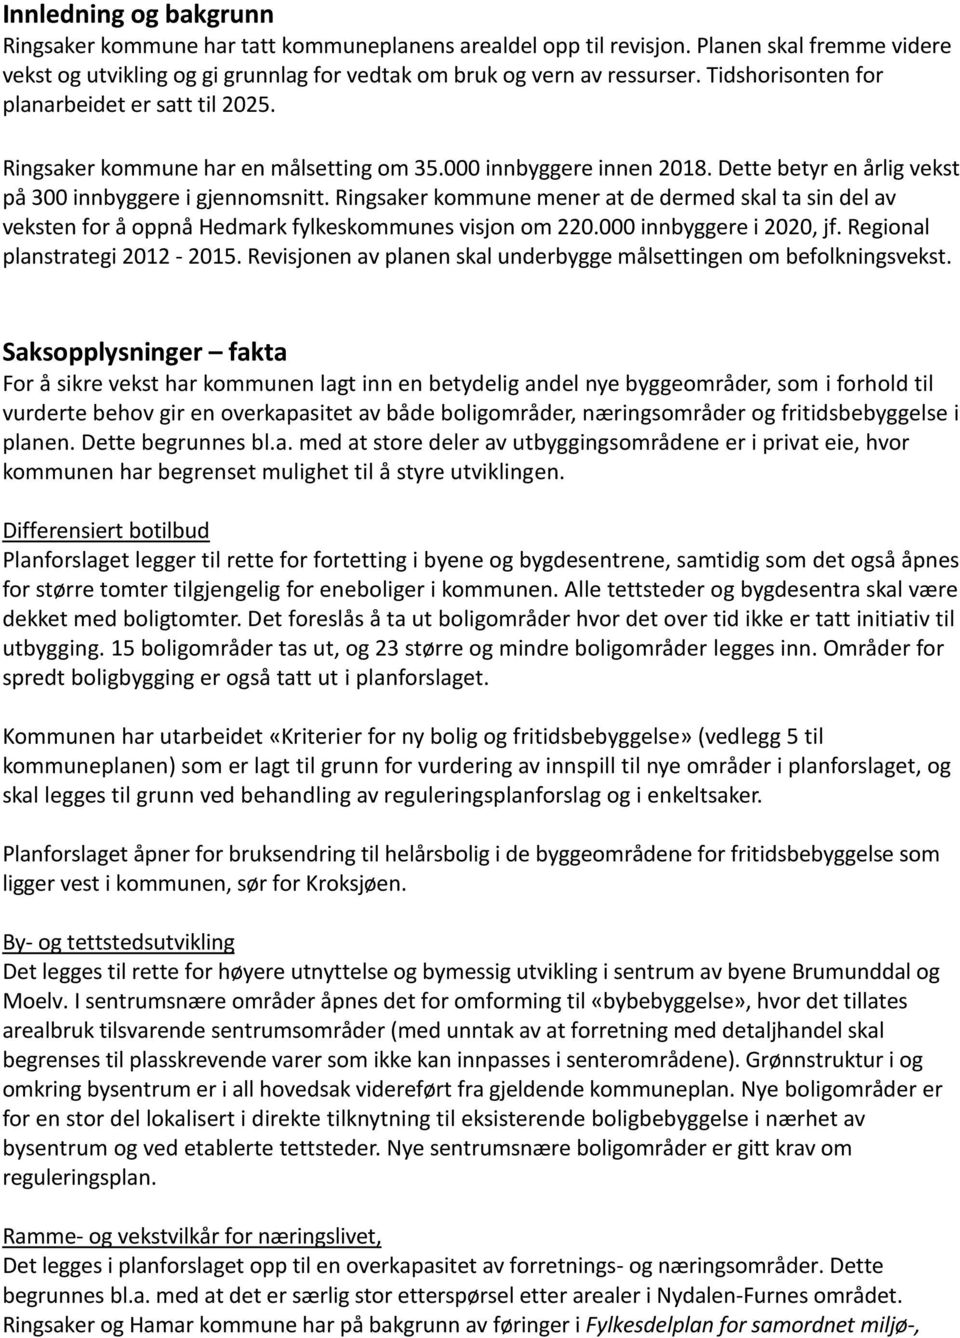 Ringsaker kommune mener at de dermed skal ta sin del av veksten for å oppnå Hedmark fylkeskommunes visjon om 220.000 innbyggere i 2020, jf. Regional planstrategi 2012-2015.